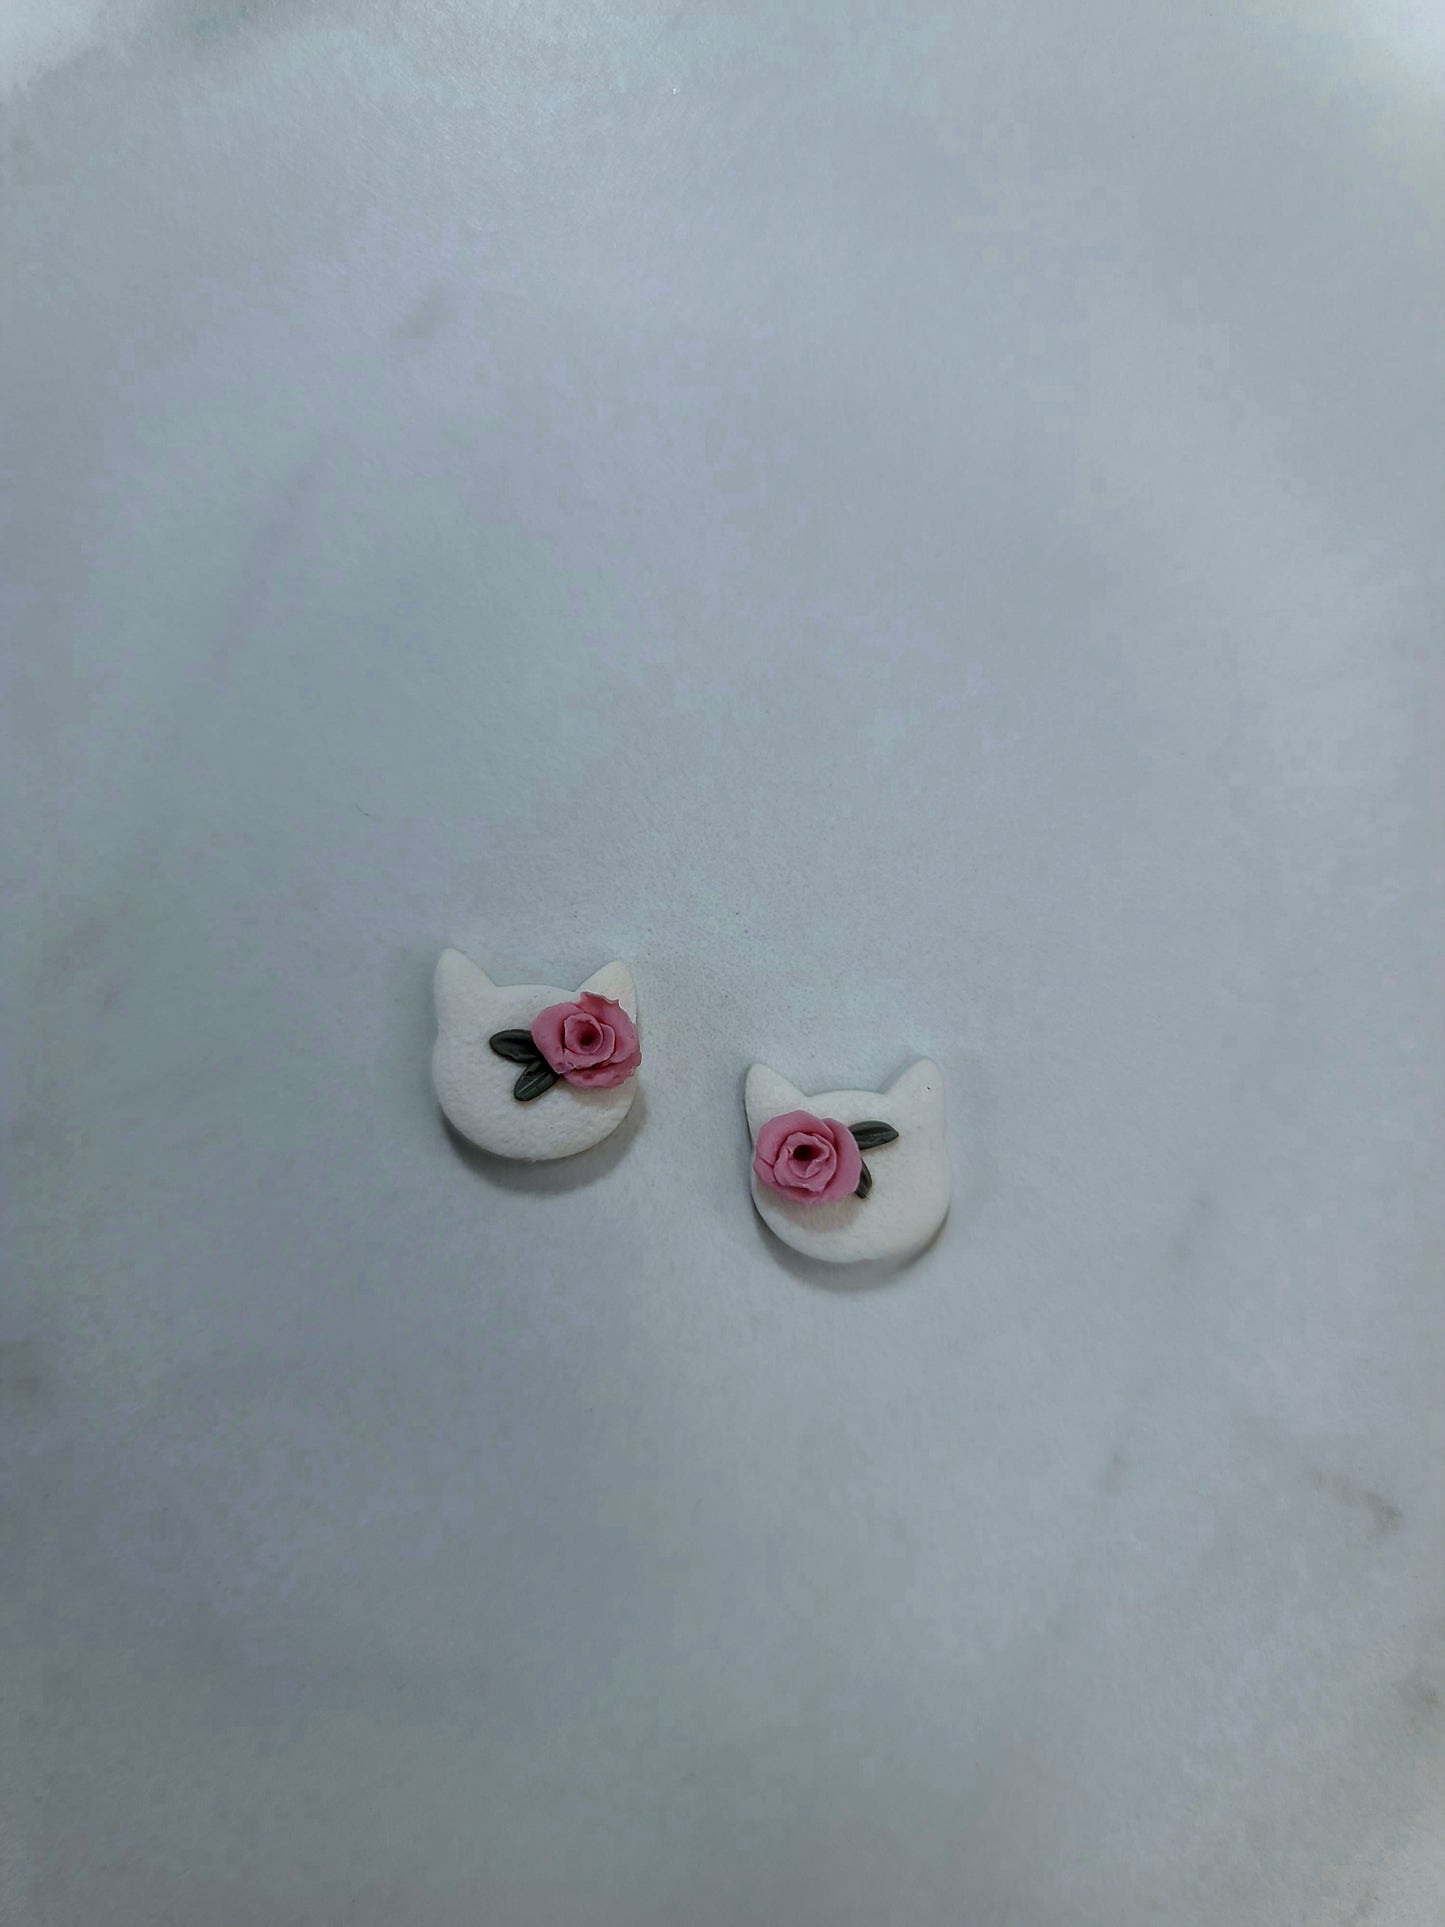 Cat floral stud earrings